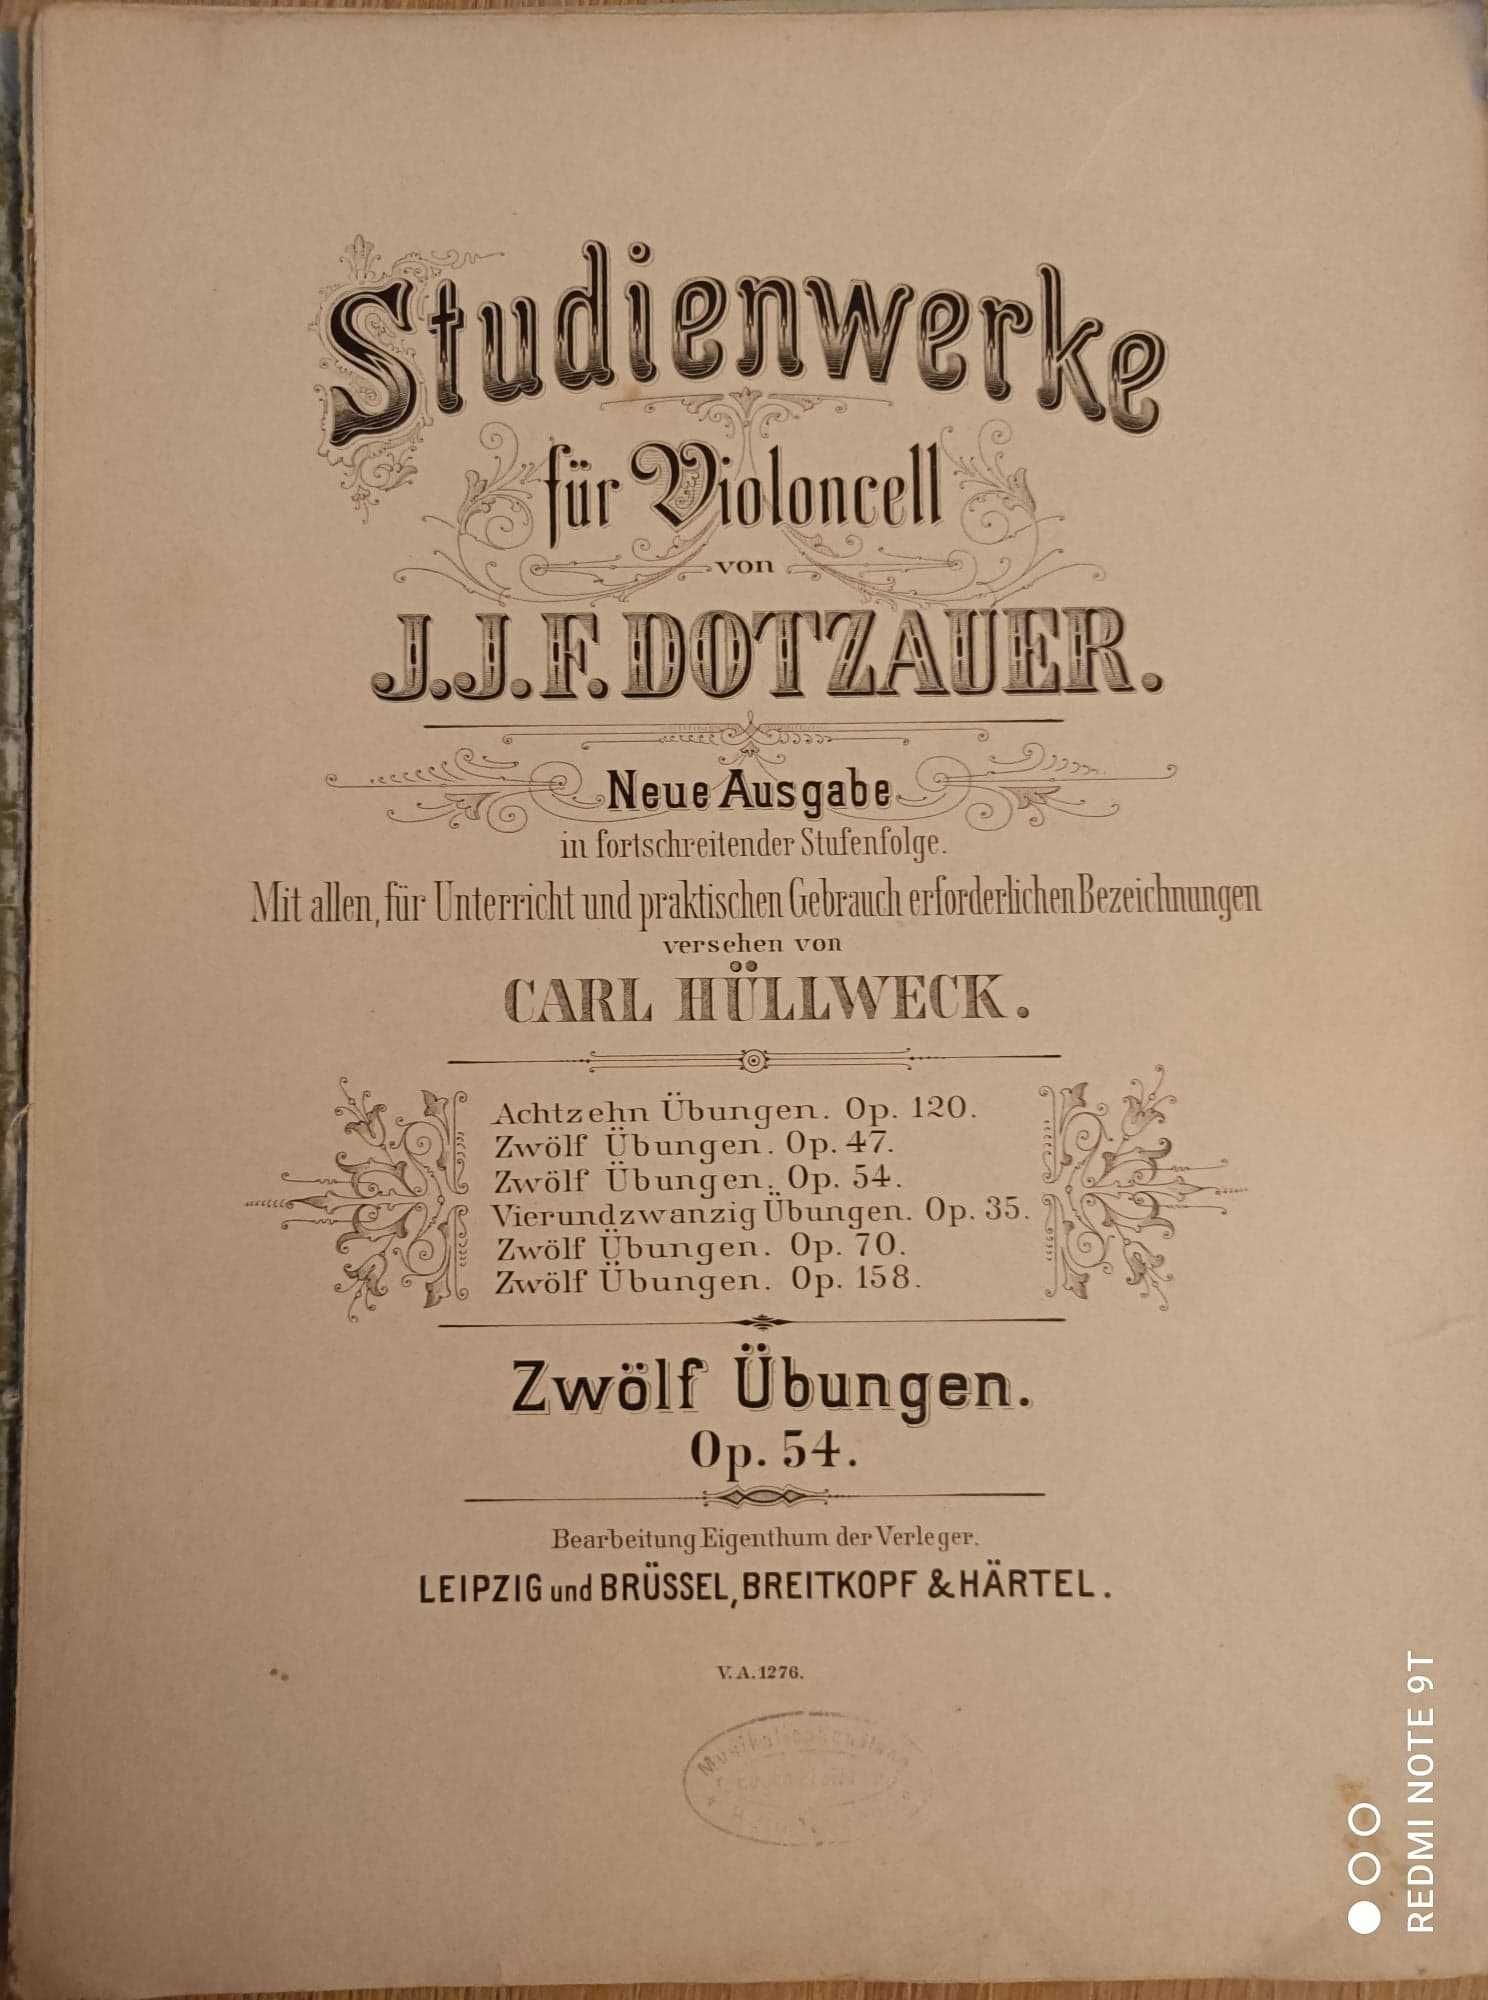 Nuty na wiolonczelę  Dotzauer  12 etiud op.54  wyd. Breitkopf  Hartel